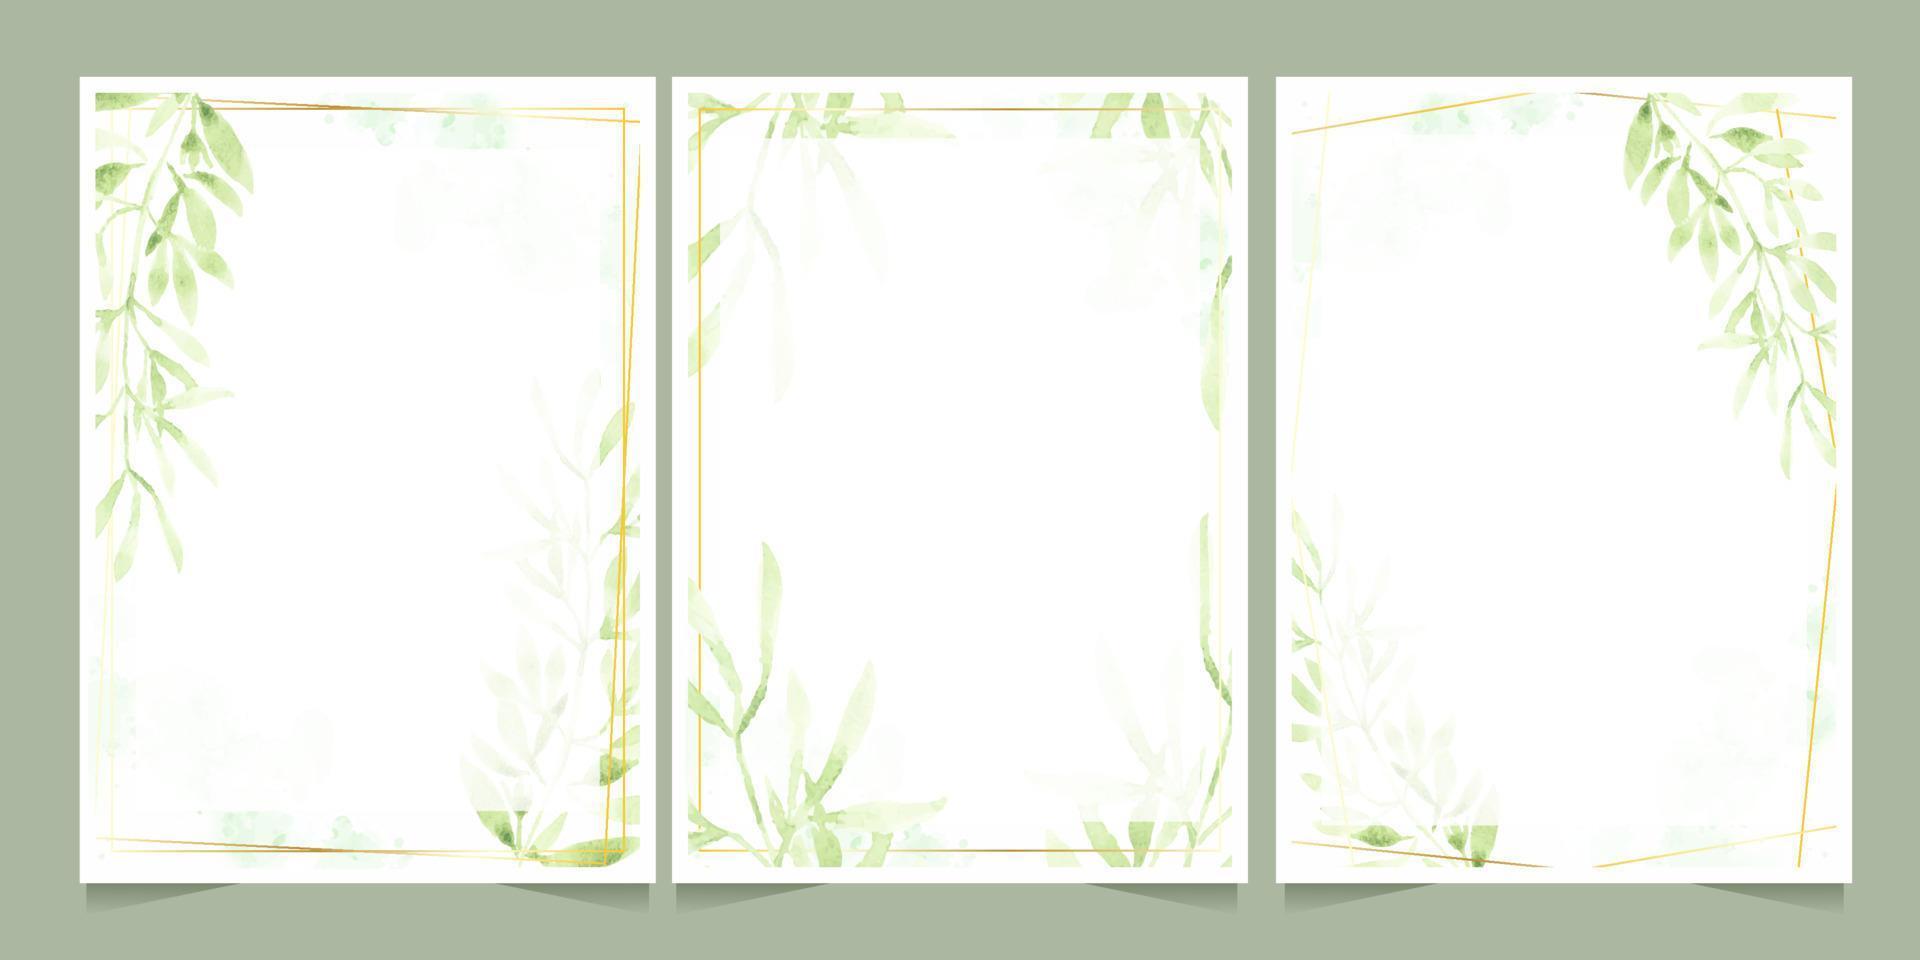 foglie verdi dell'acquerello con cornice dorata su sfondo splash collezione di modelli di biglietti d'invito per matrimoni o compleanni vettore